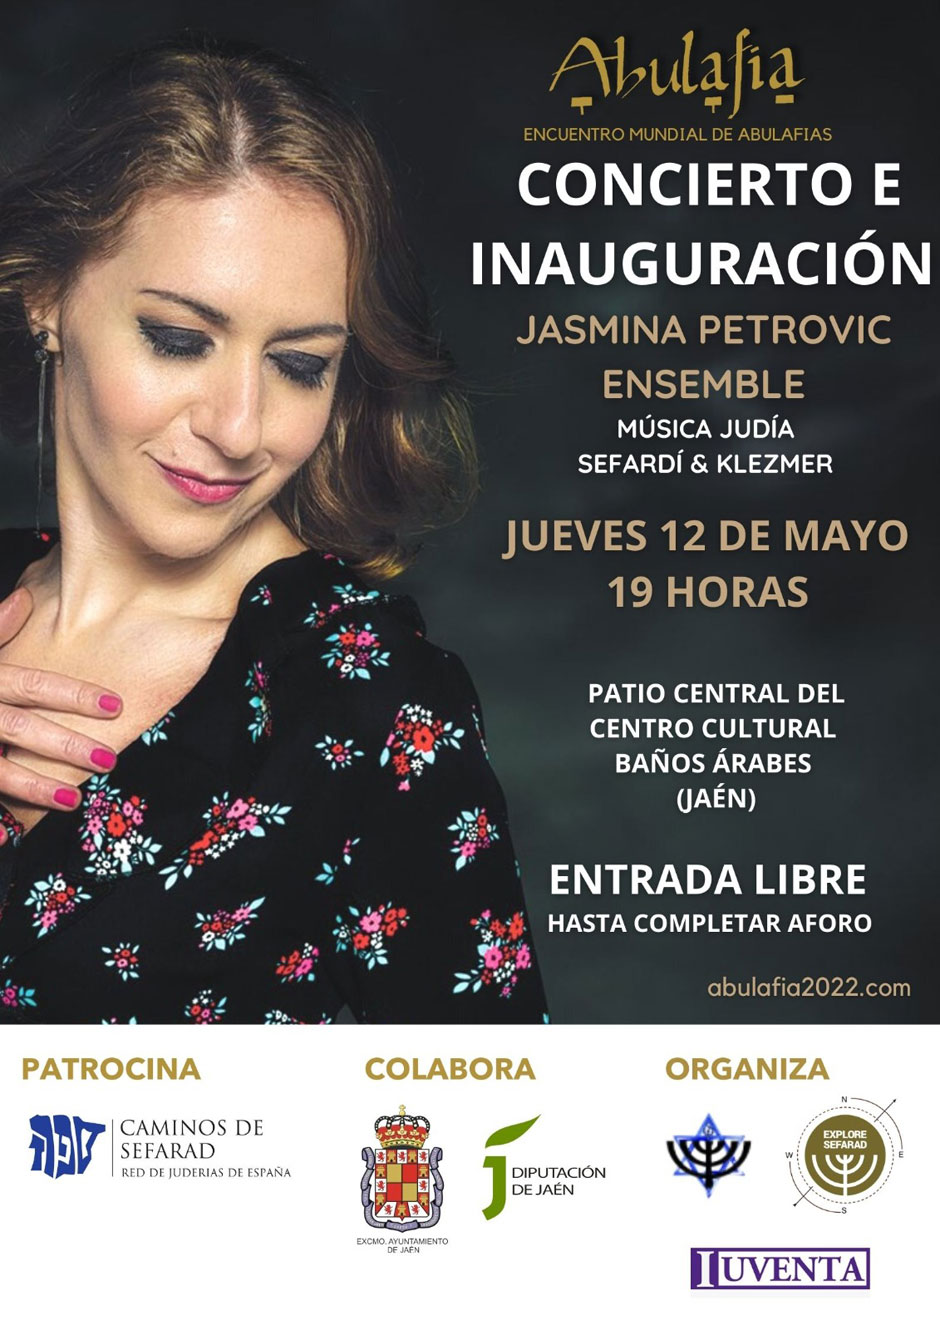 Concierto de Jasmina Petrovic Ensemble | Red de Juderías de España Caminos de Sefarad